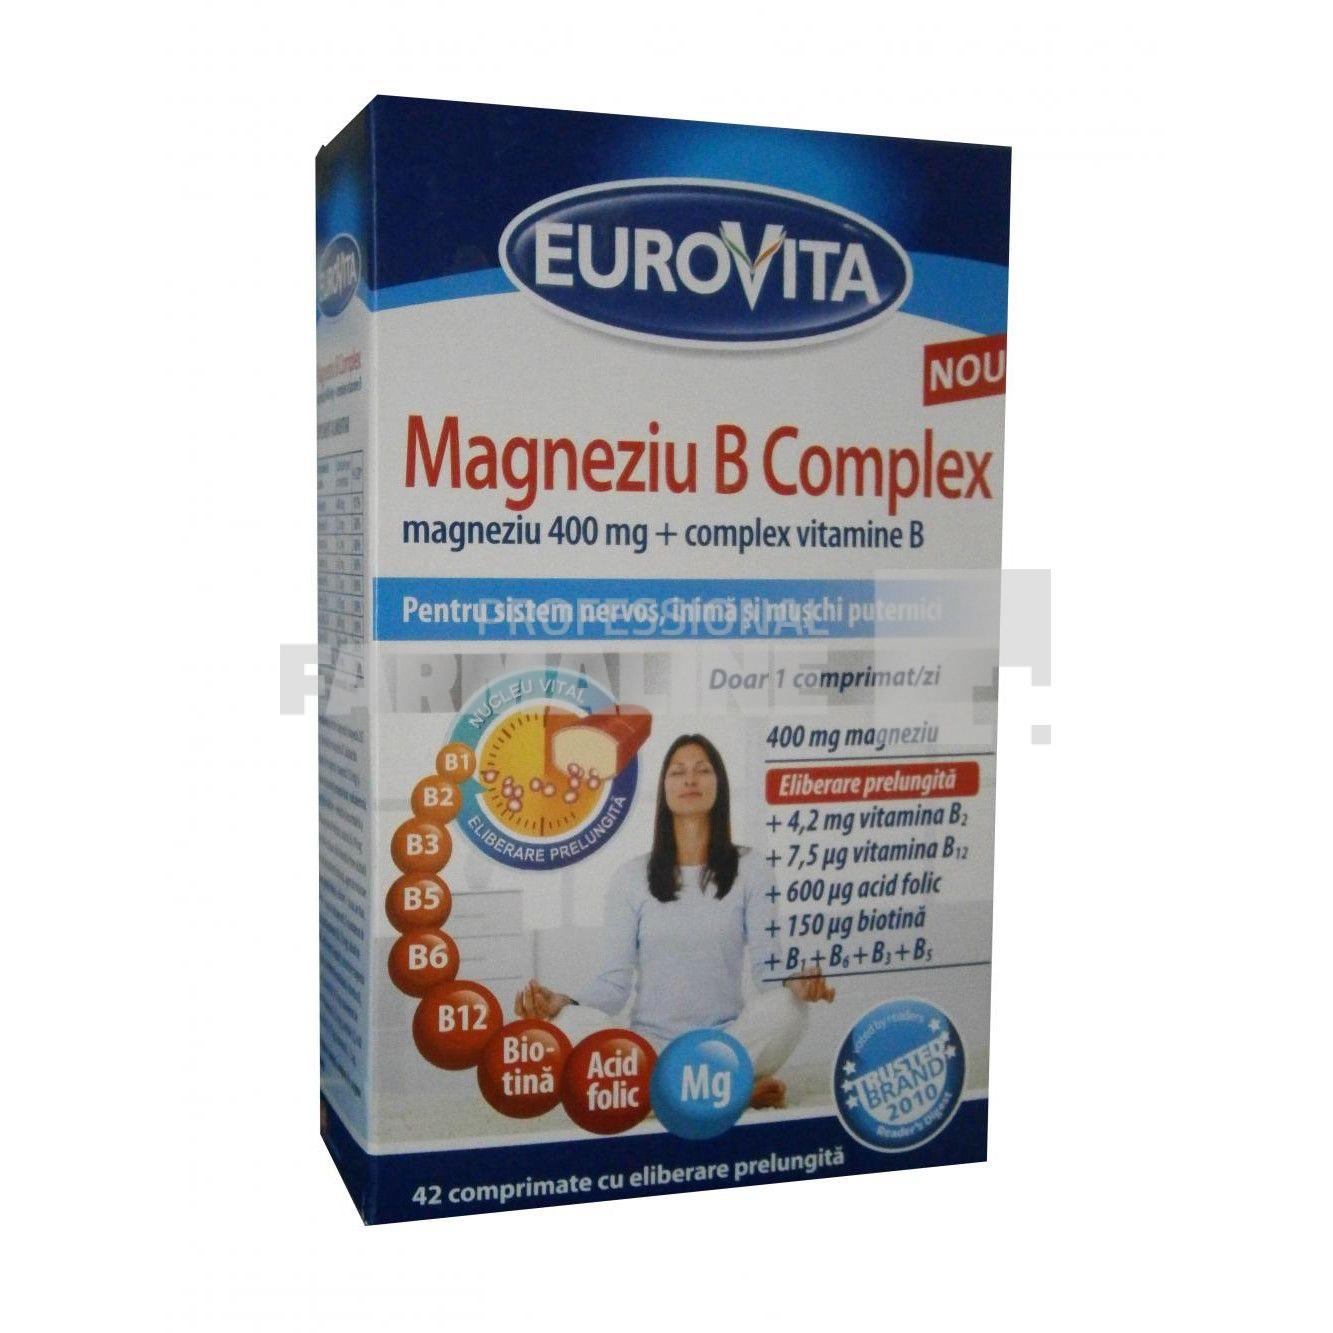 eurovita magneziu b complex 42 comprimate cu elibe 175590 1 1544174361